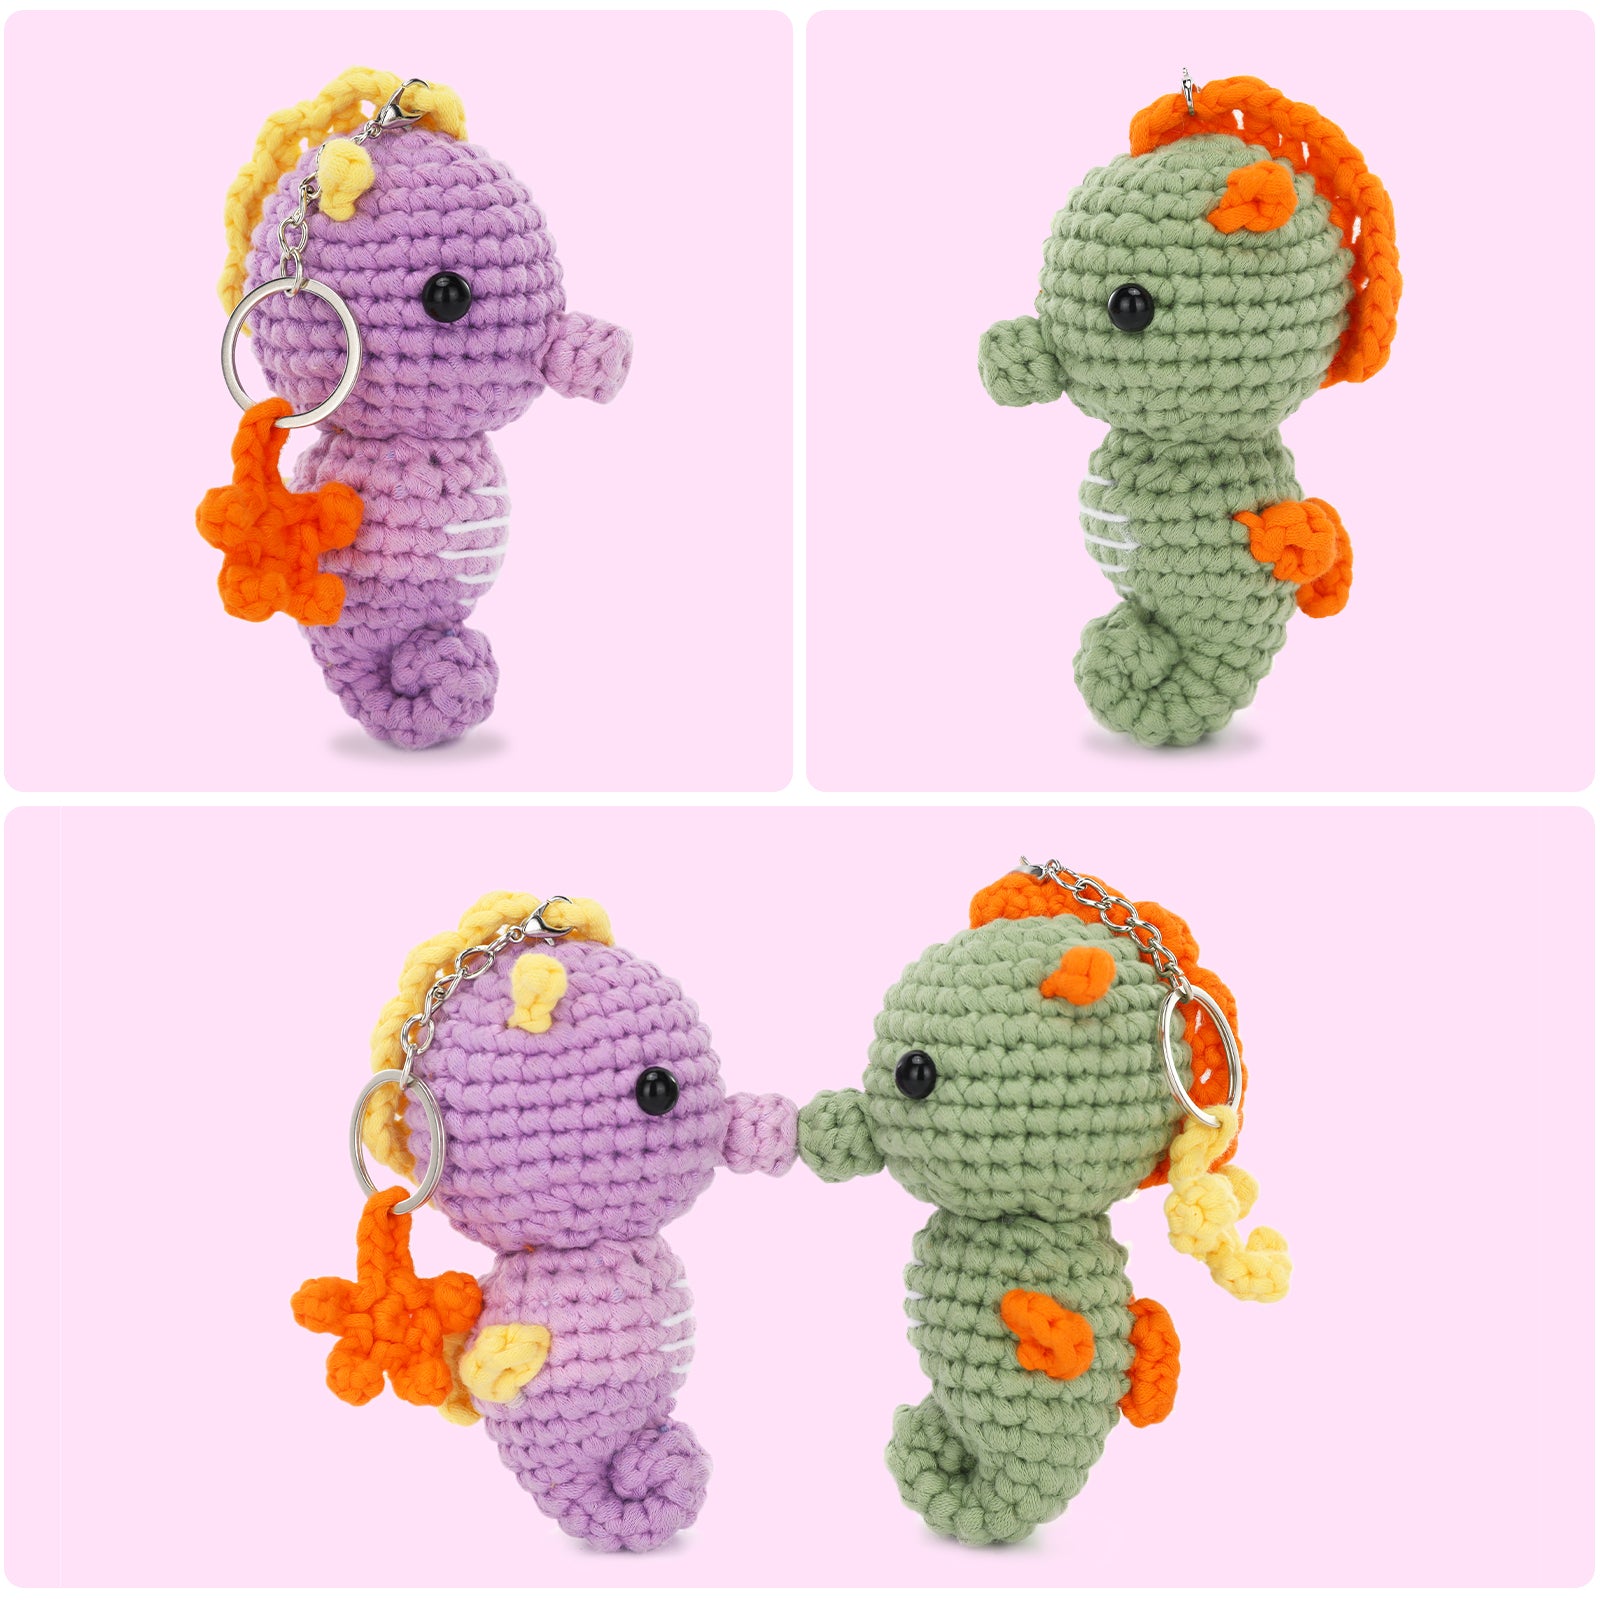 CrochetBox Complete Crochet Kit for Beginners - Axolotl